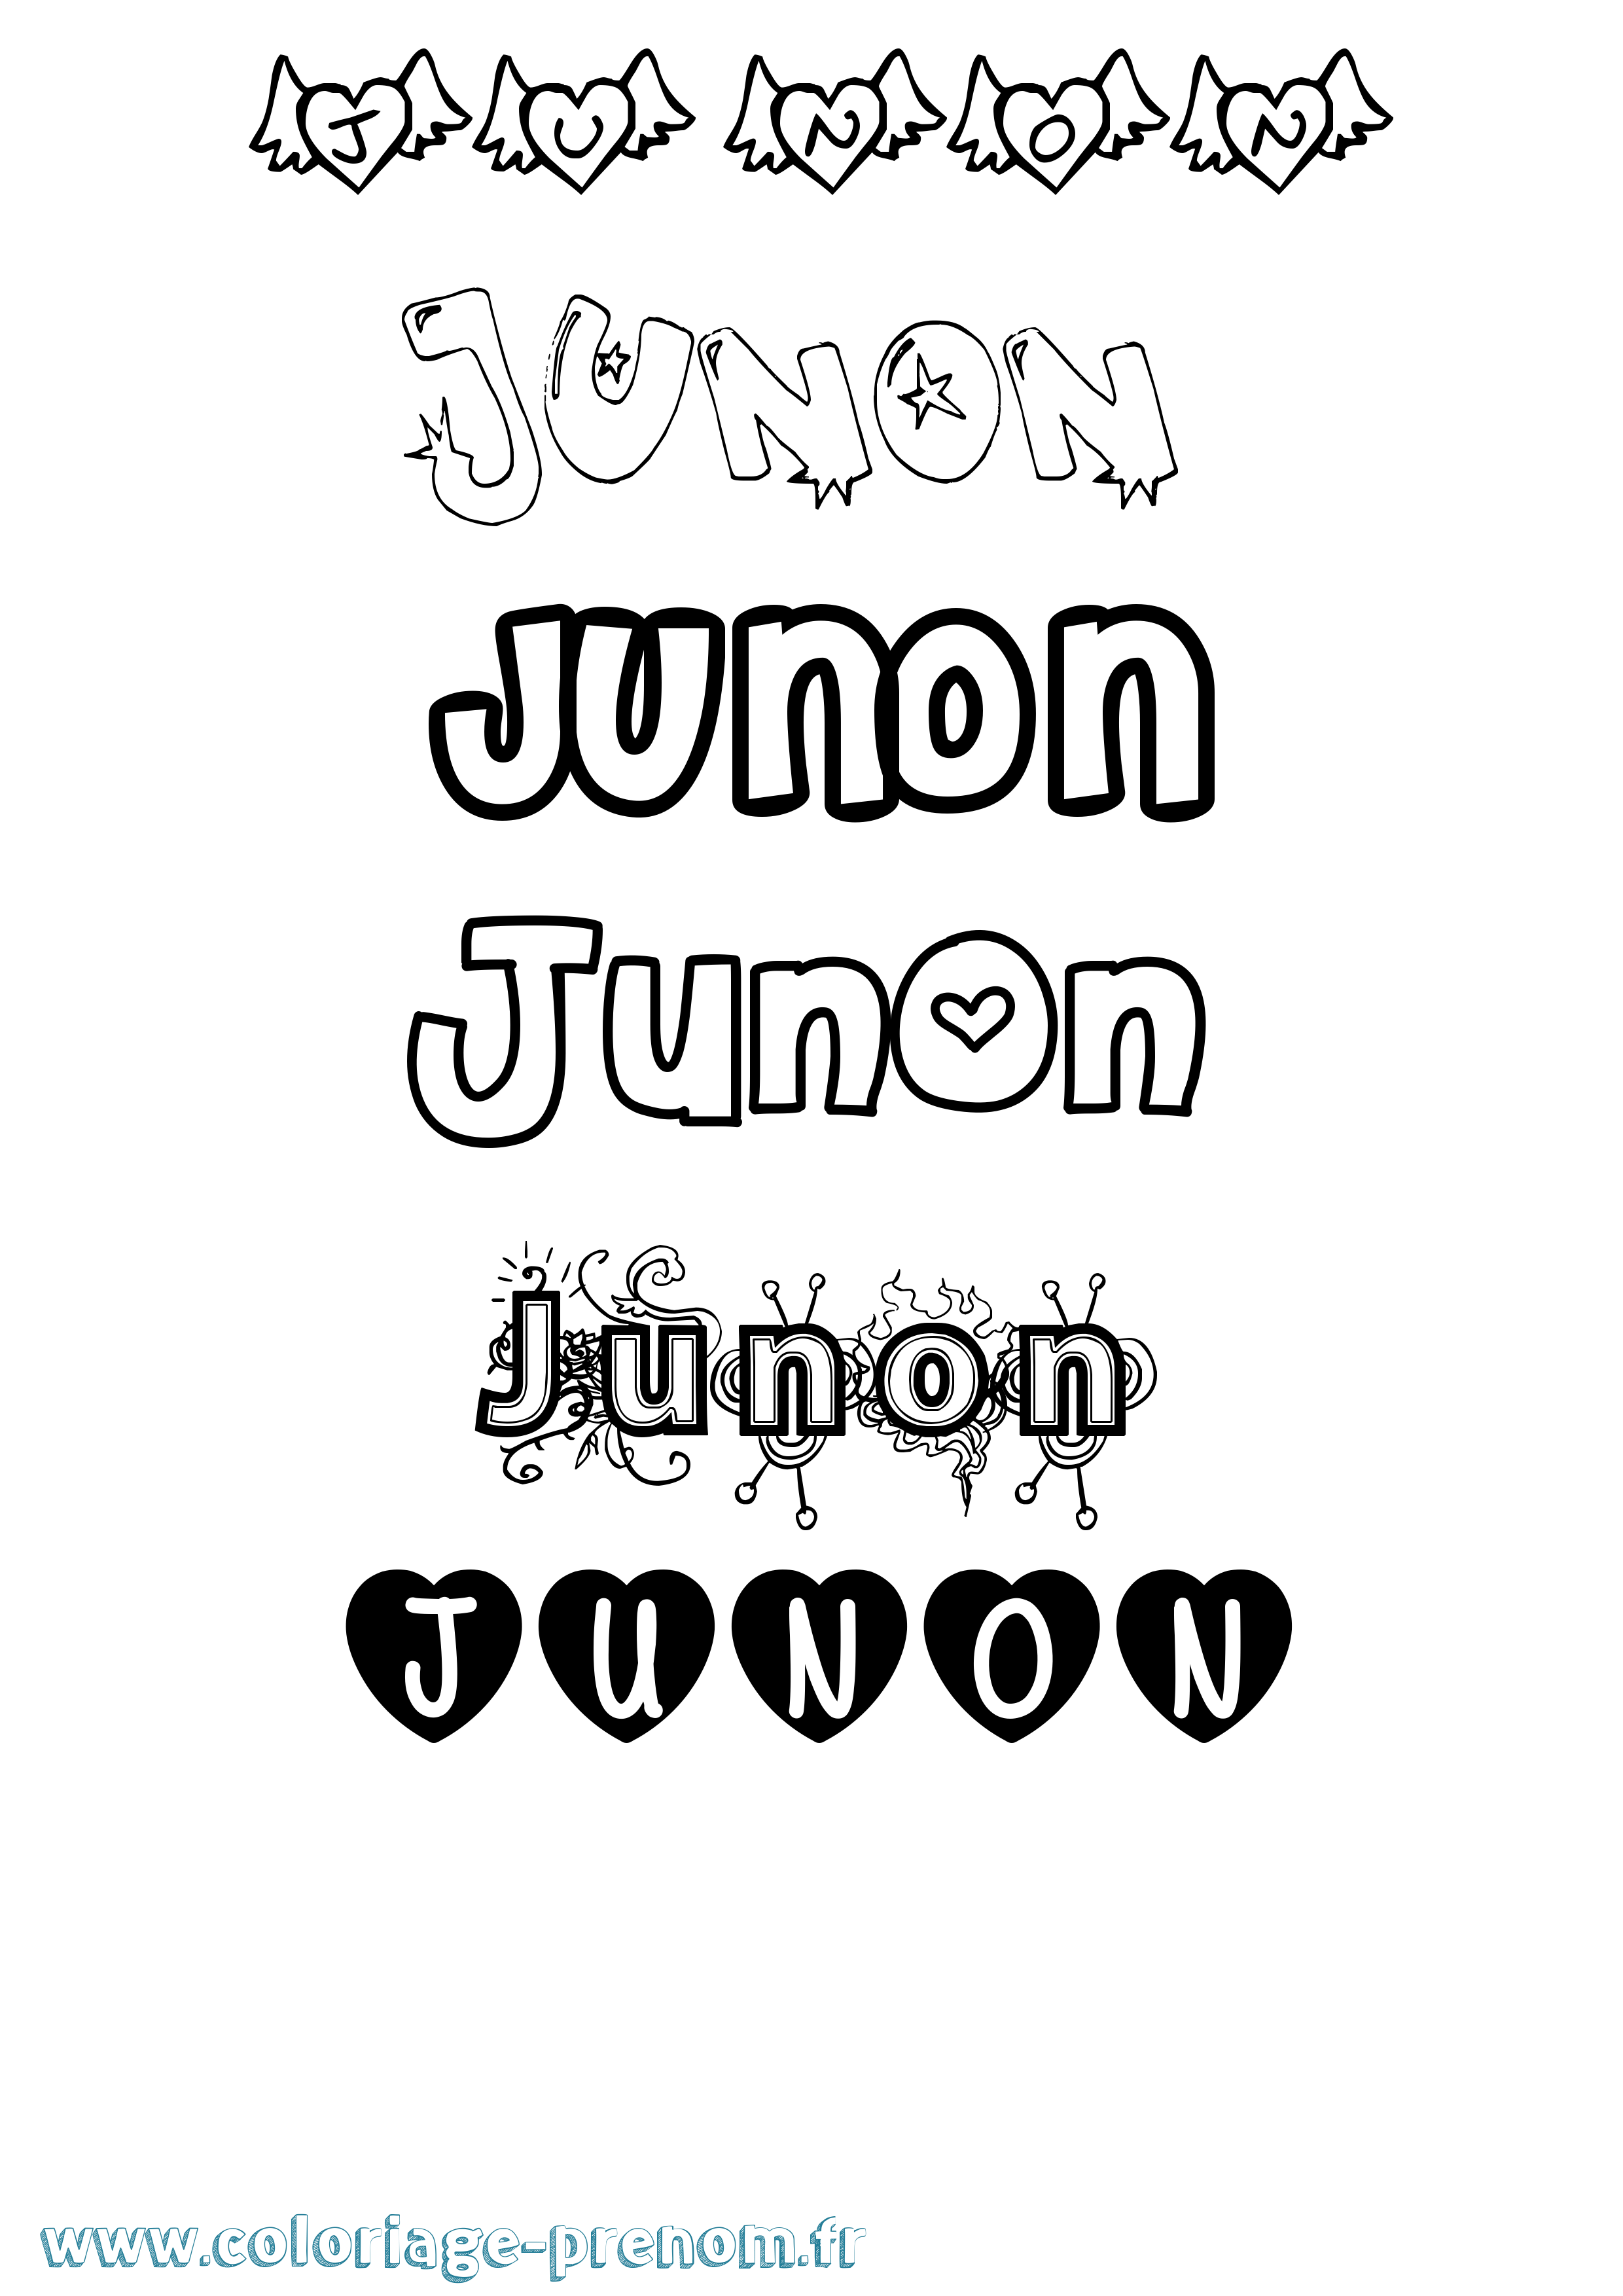 Coloriage prénom Junon